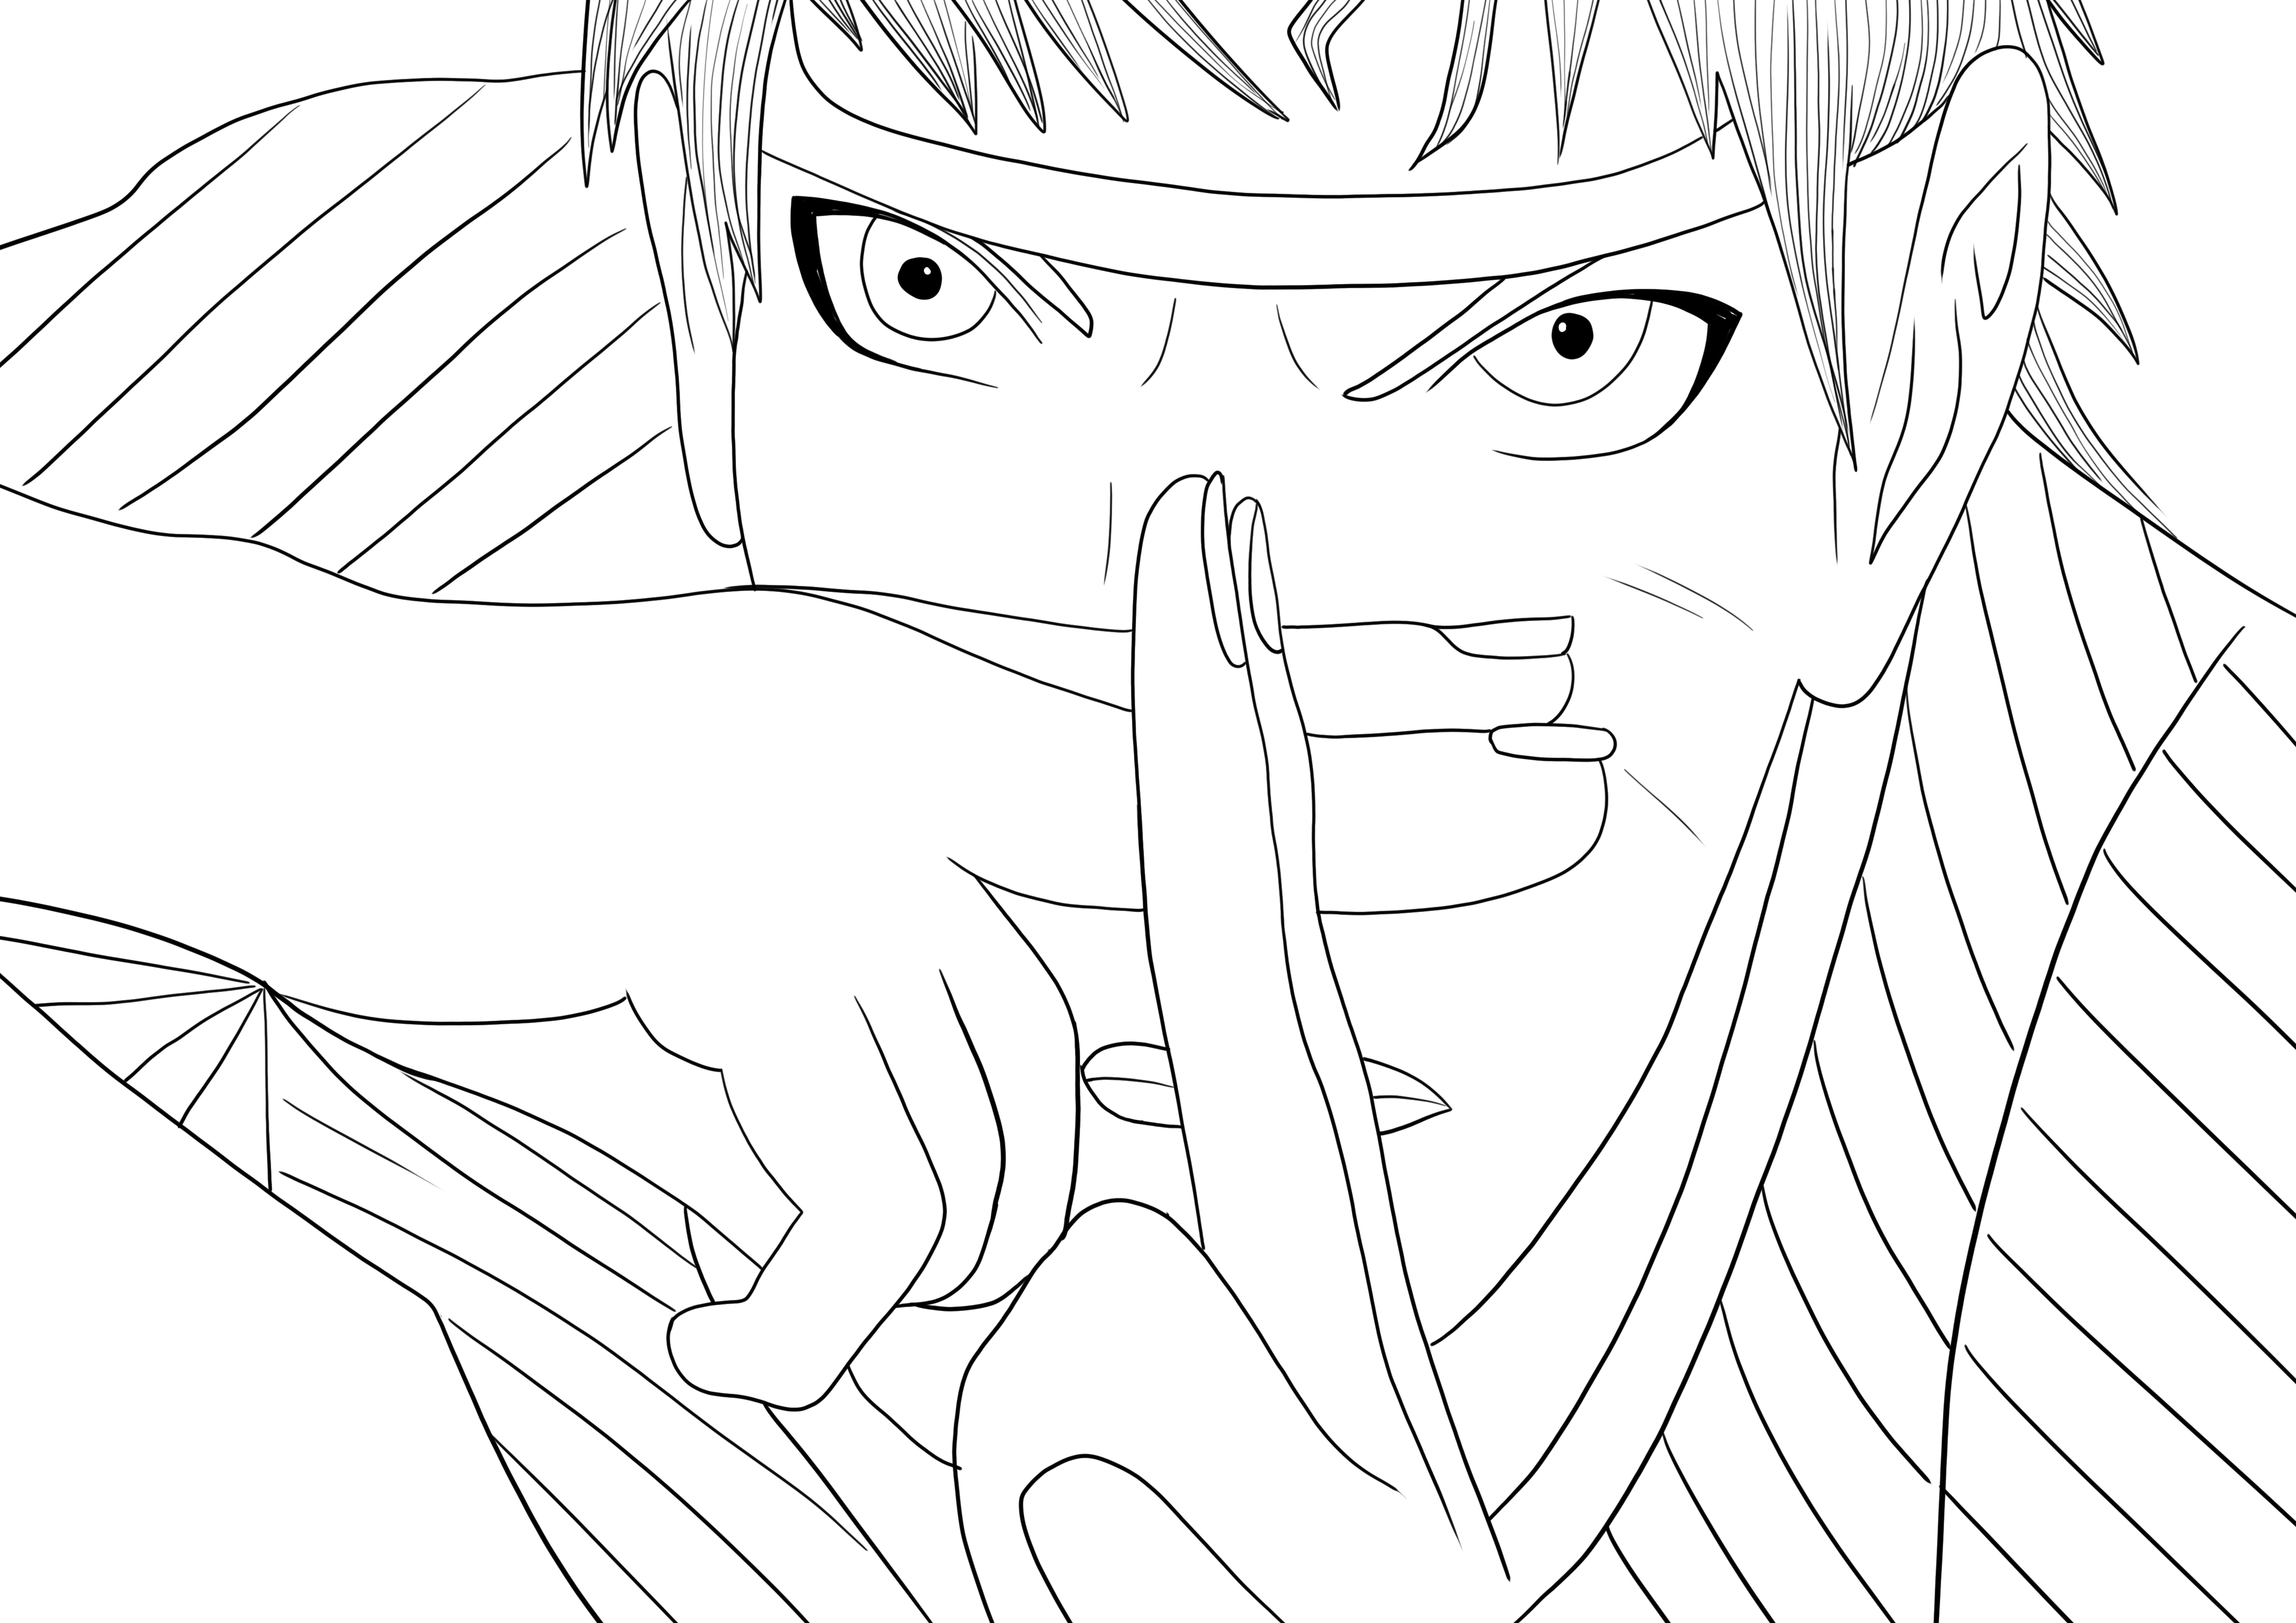 Meu desenho! (Naruto vs Sasuke)